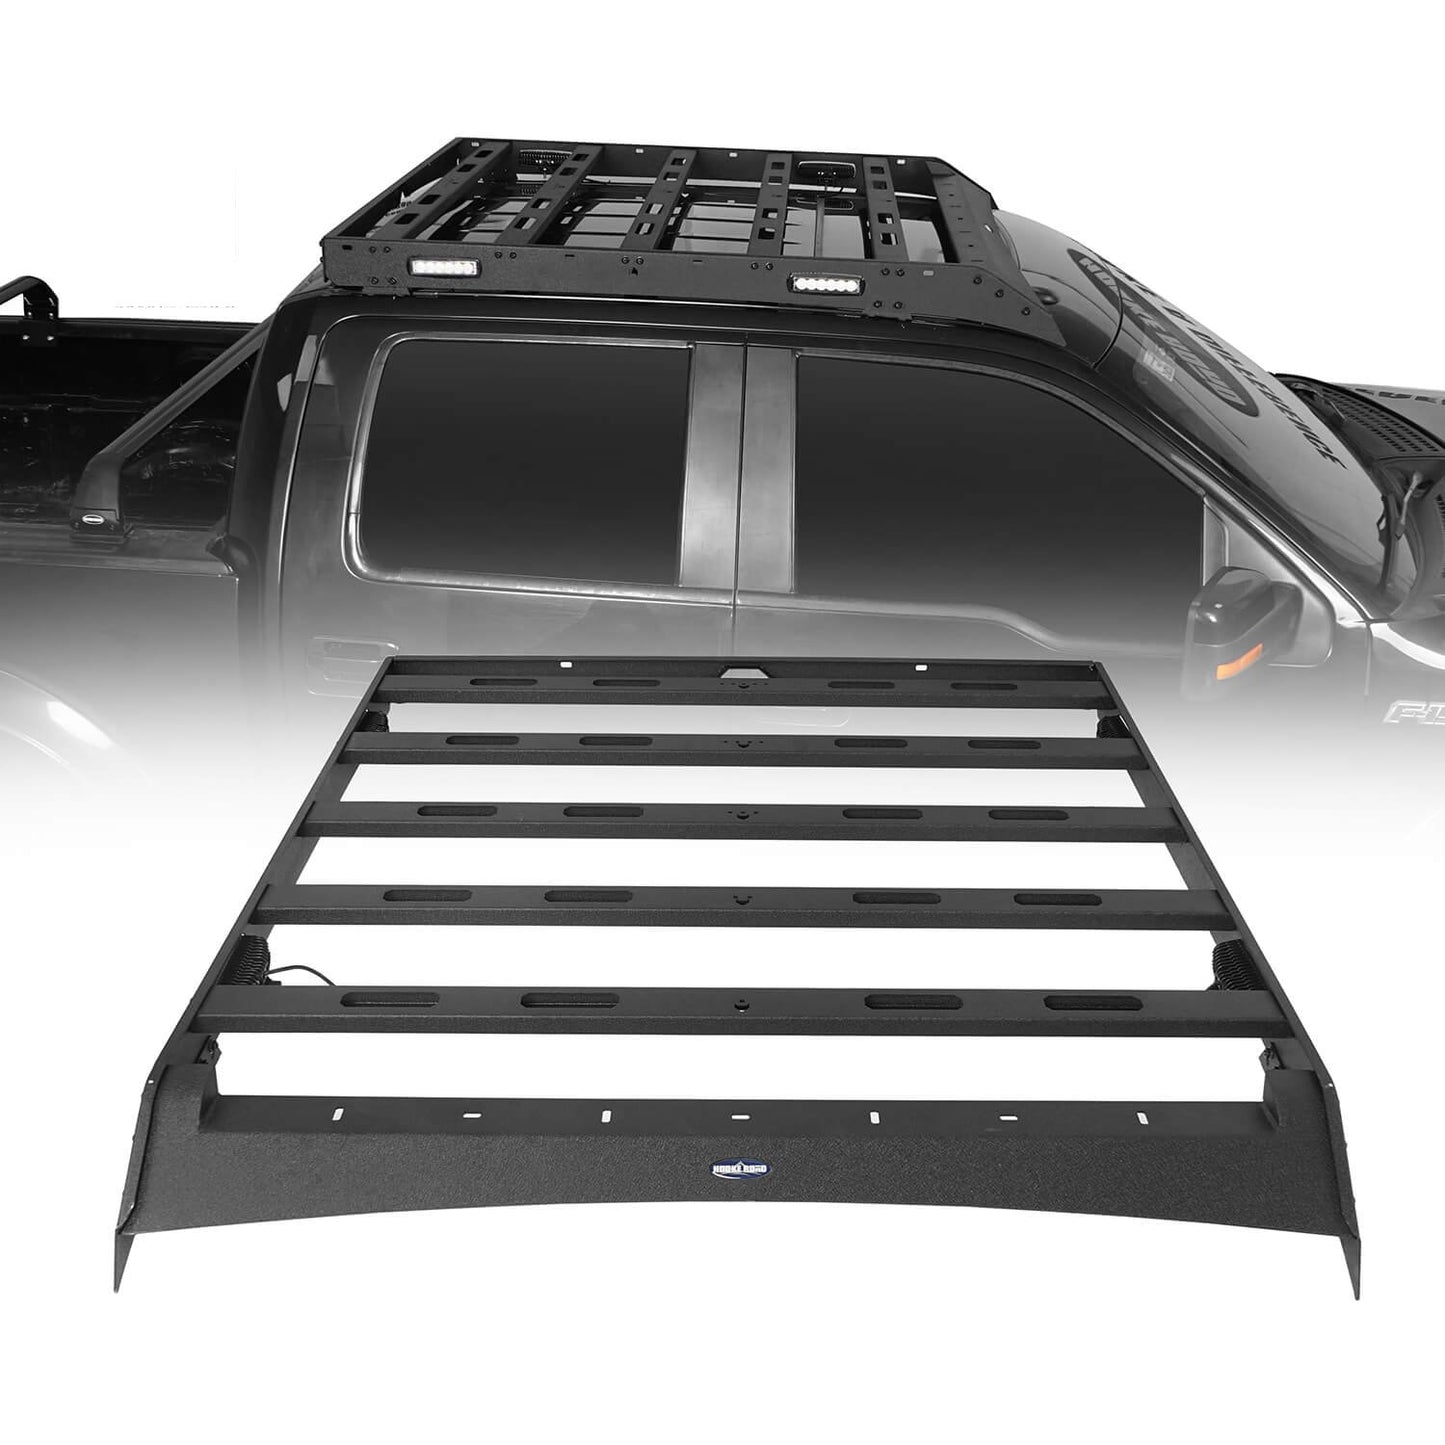 Front Bumper & Rear Bumper & Roof Rack(09-14 Ford F-150 SuperCrew,Excluding Raptor) - ultralisk4x4